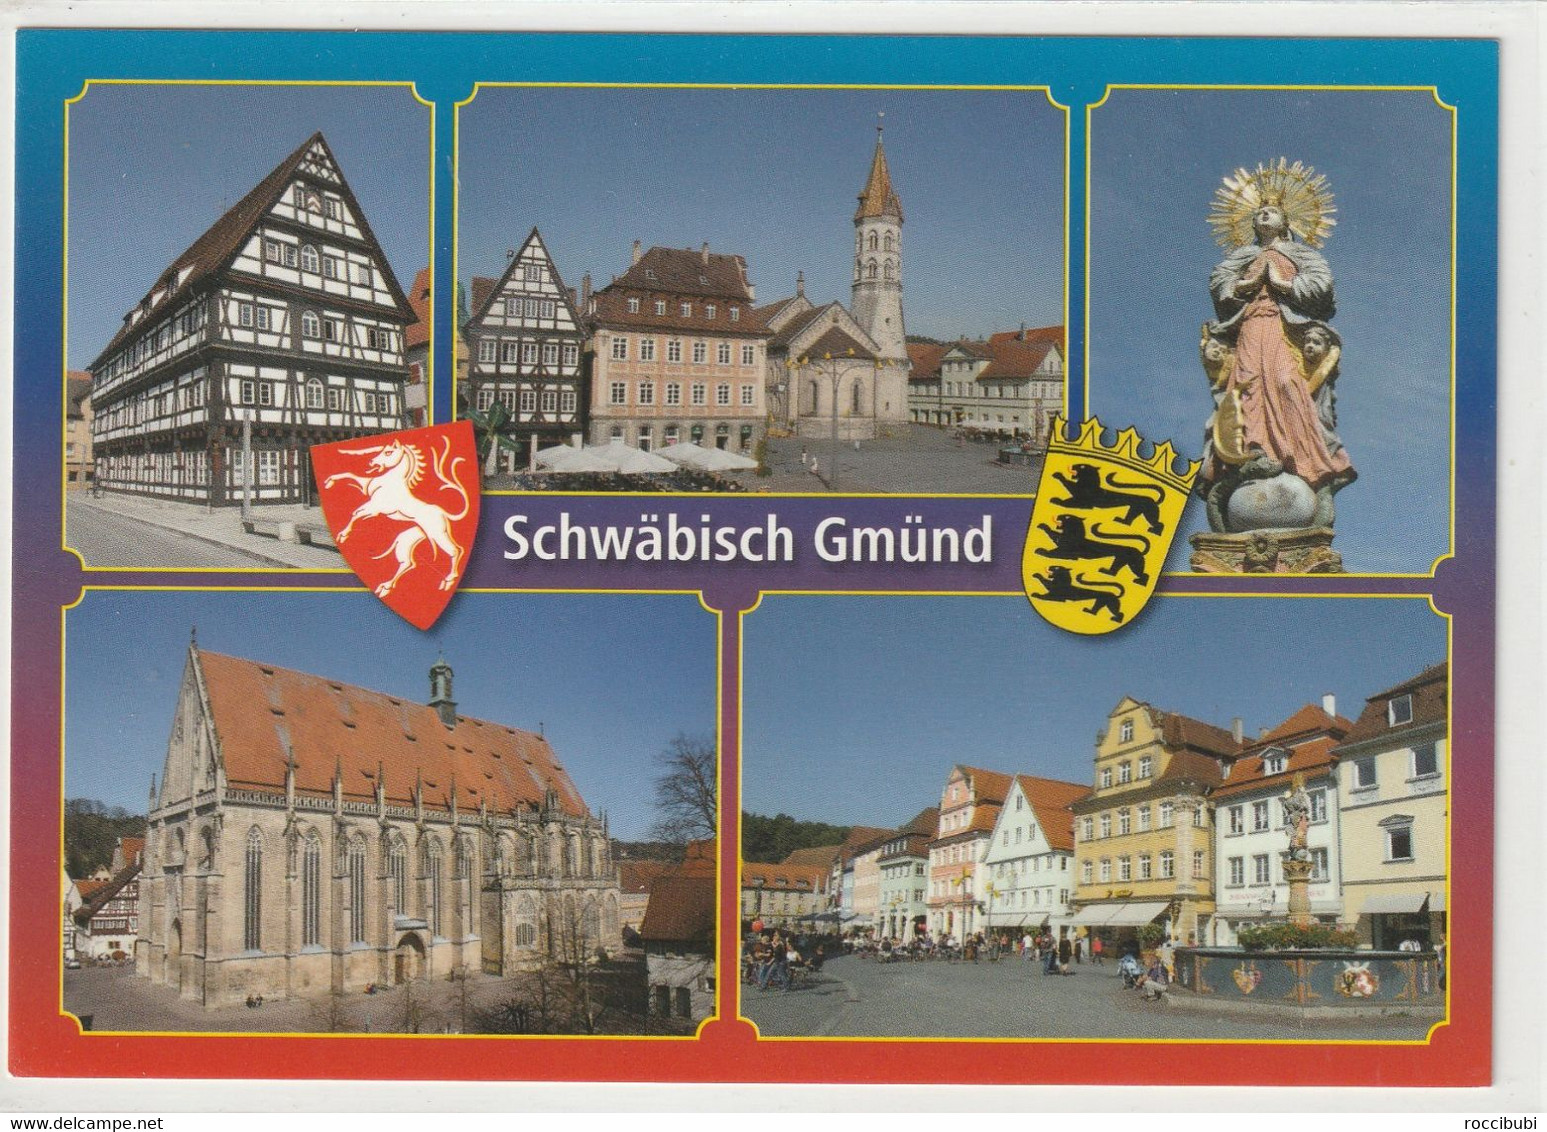 Schwäbisch Gmünd, Baden-Württemberg - Schwaebisch Gmünd